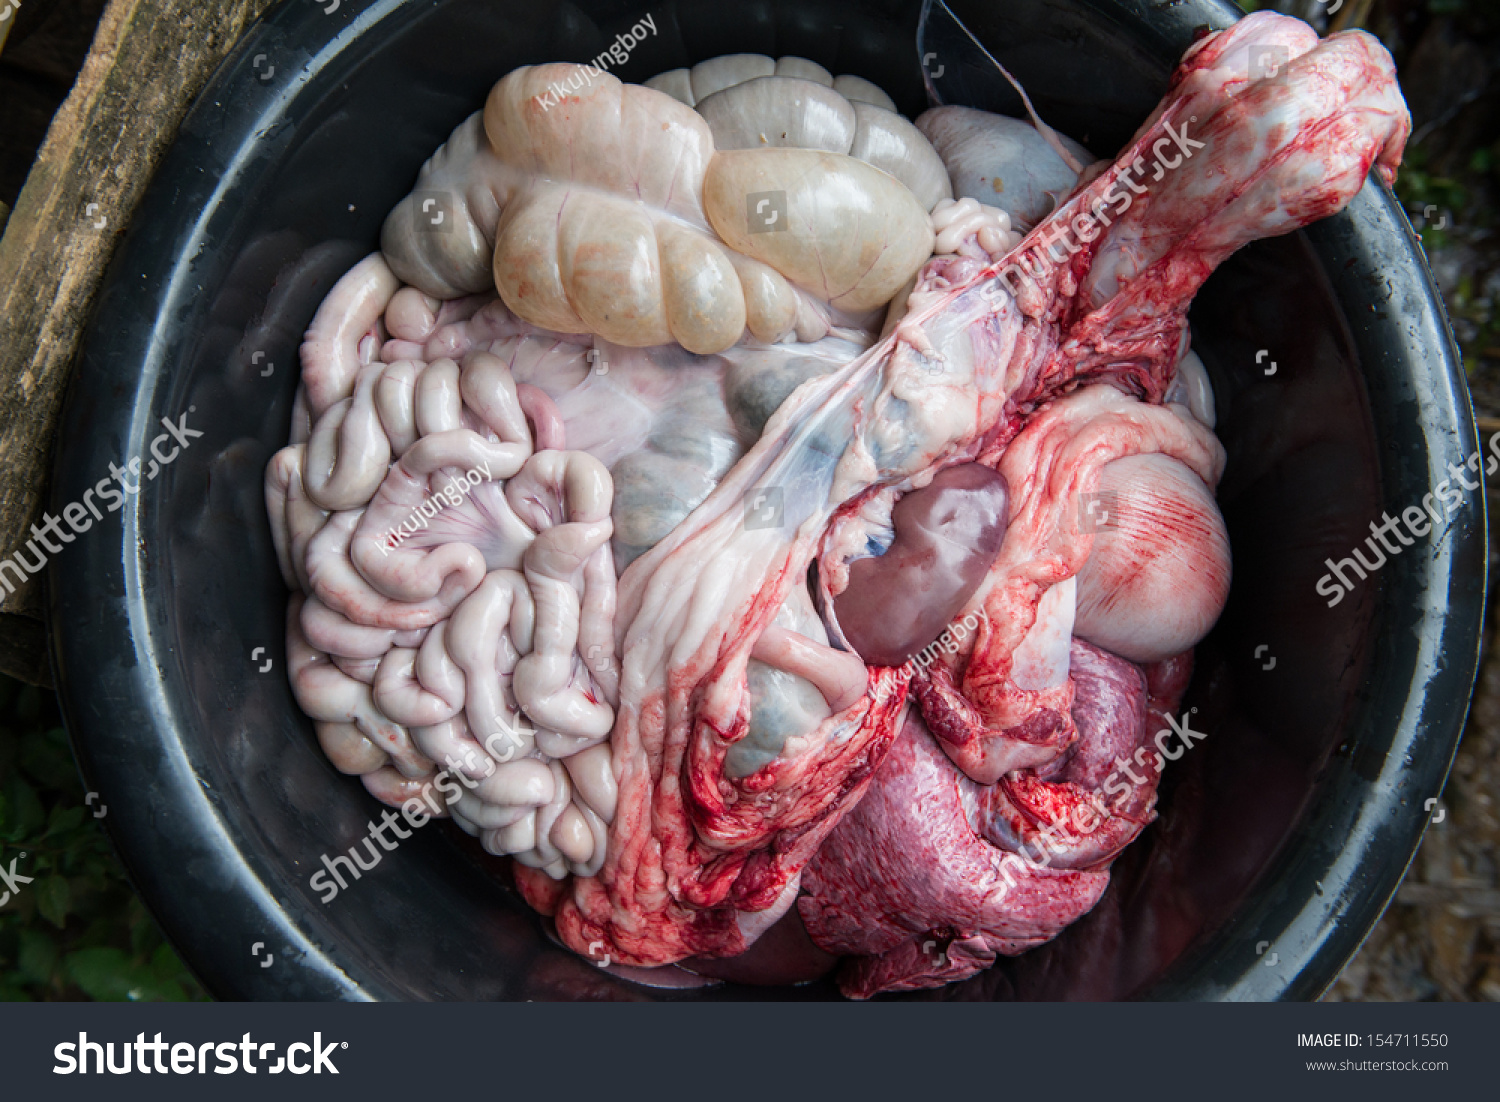 Internal Organs Of Pig Stock Photo 154711550 : Shutterstock